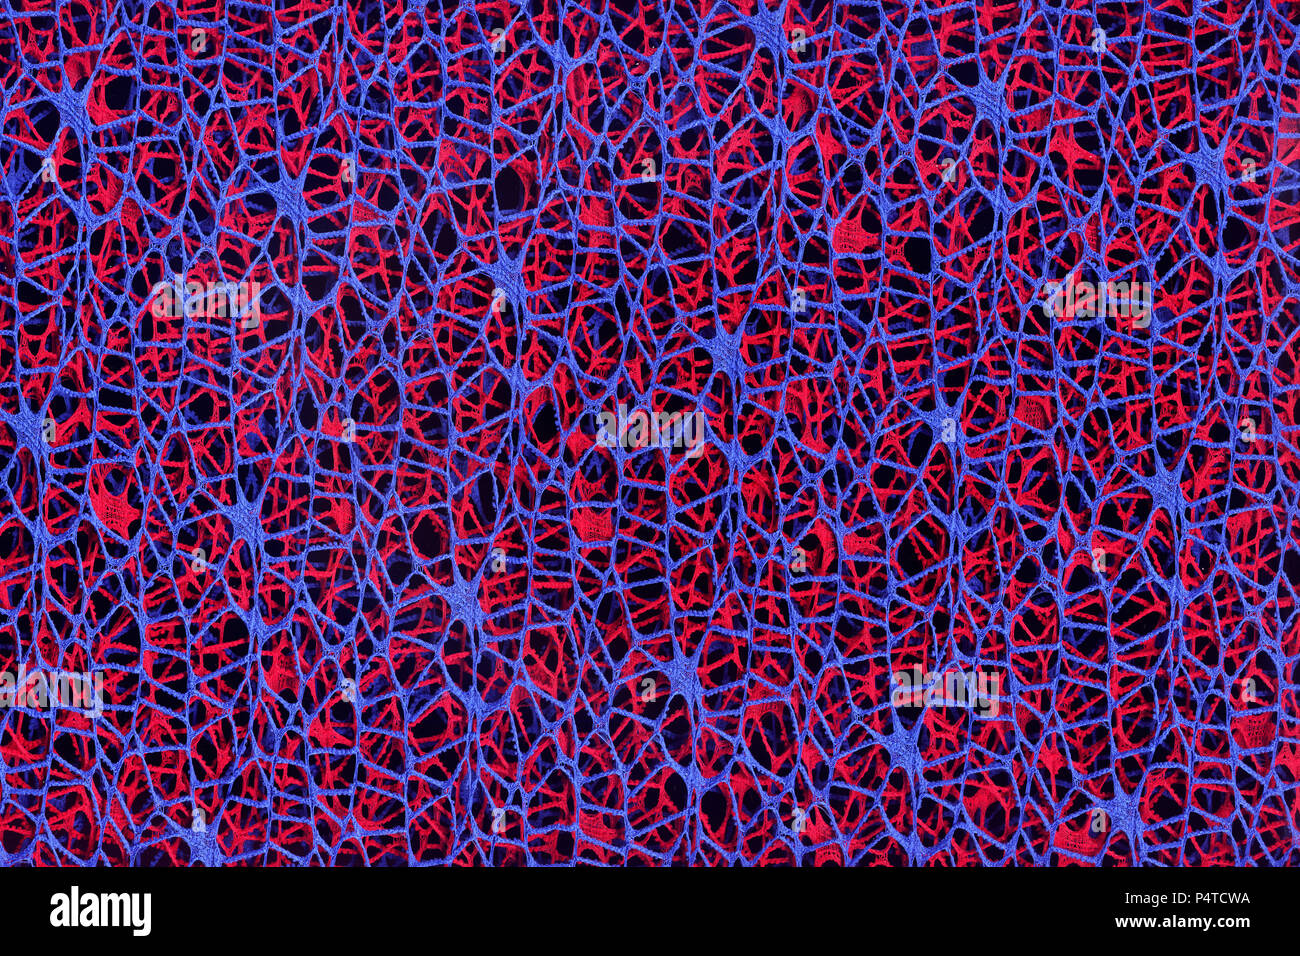 Zusammenfassung Hintergrund aus Gewebe aus blauen und roten Threads auf einem schwarzen Hintergrund. Stockfoto